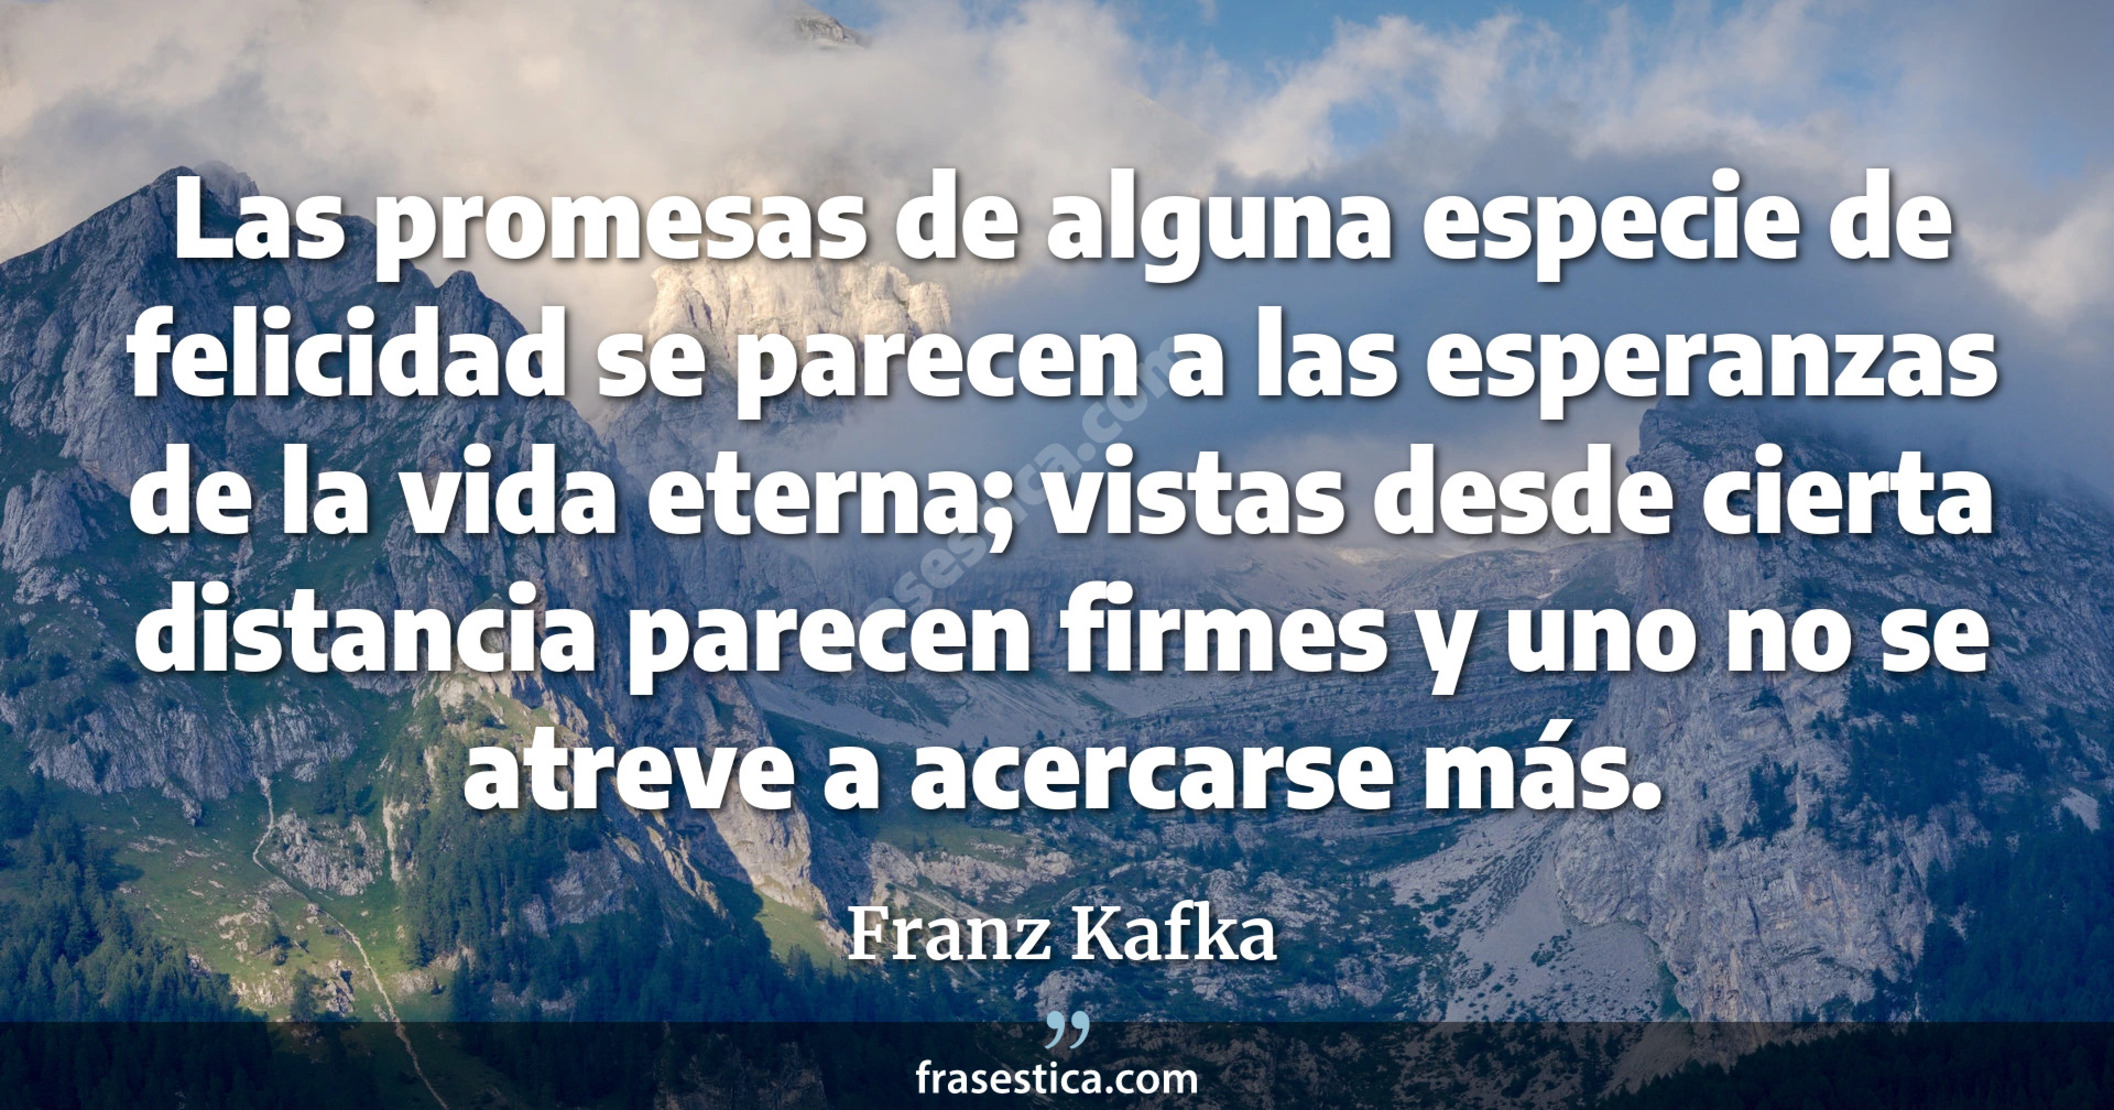 Las promesas de alguna especie de felicidad se parecen a las esperanzas de la vida eterna; vistas desde cierta distancia parecen firmes y uno no se atreve a acercarse más. - Franz Kafka